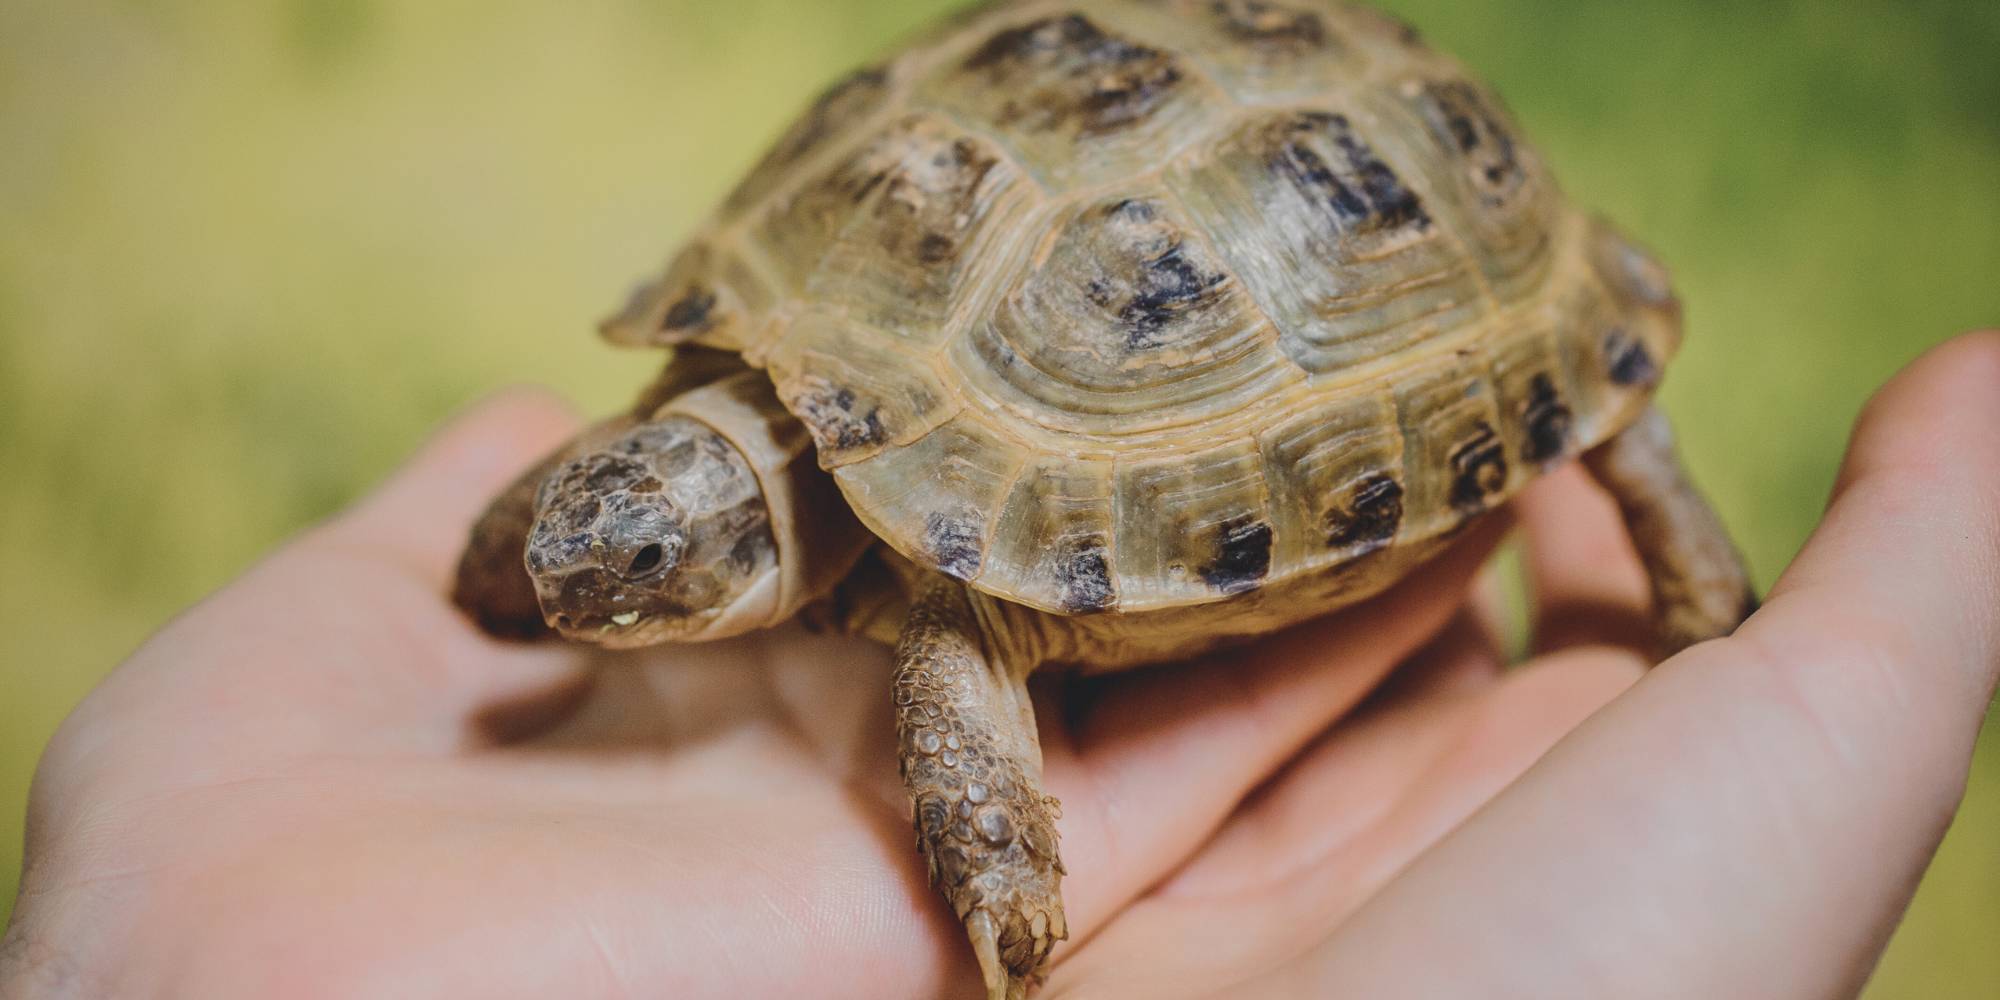 Pet tortoise in hand